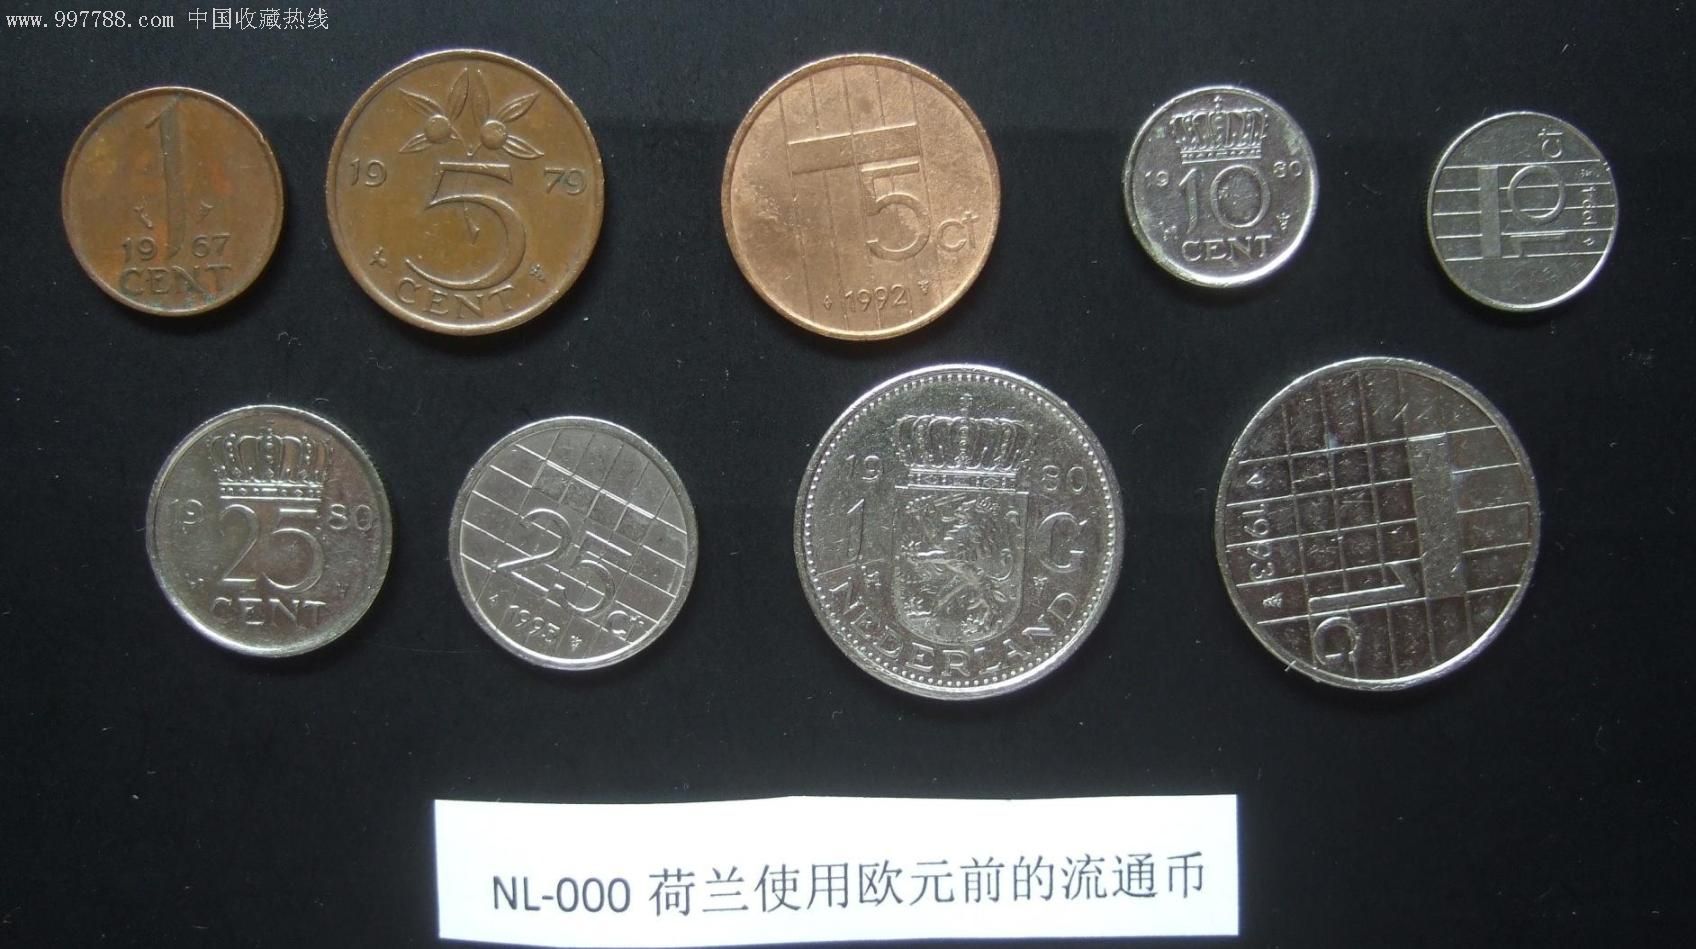 荷兰使用欧元前的流通币,一套9枚不同硬币